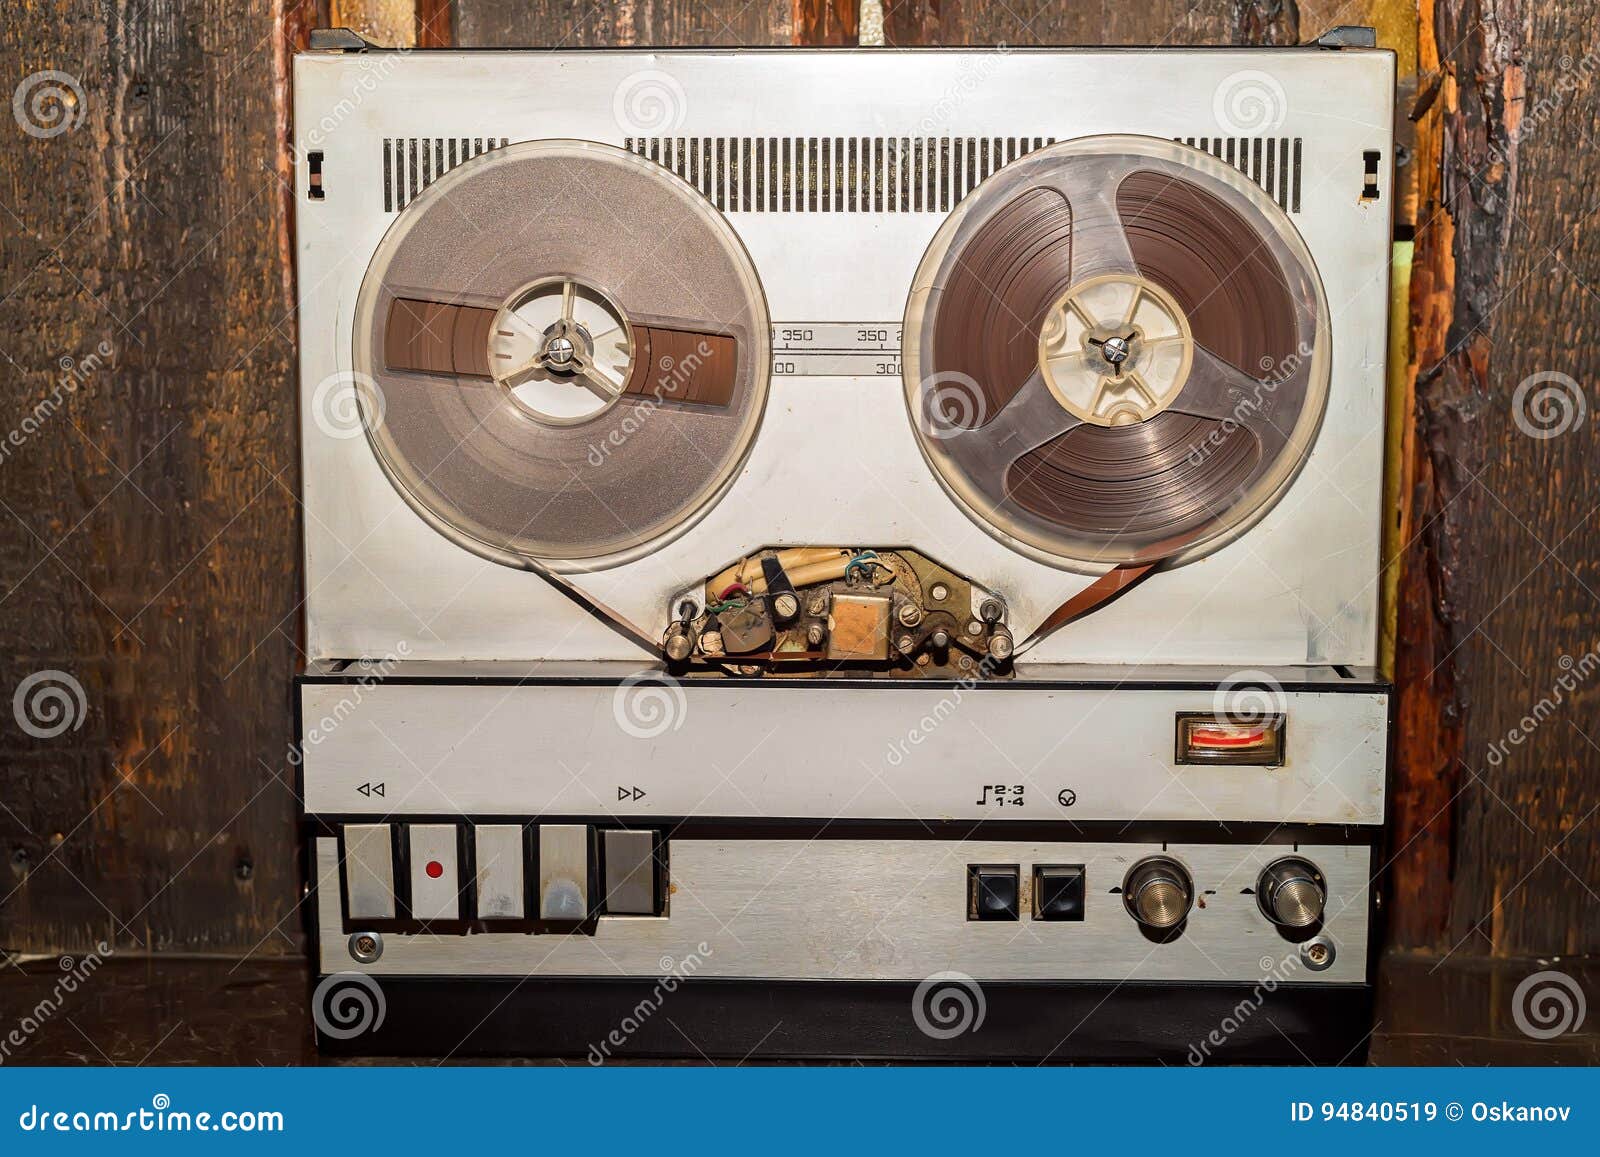 https://thumbs.dreamstime.com/z/old-vintage-reel-tape-recorder-close-up-obsolete-bobbin-94840519.jpg